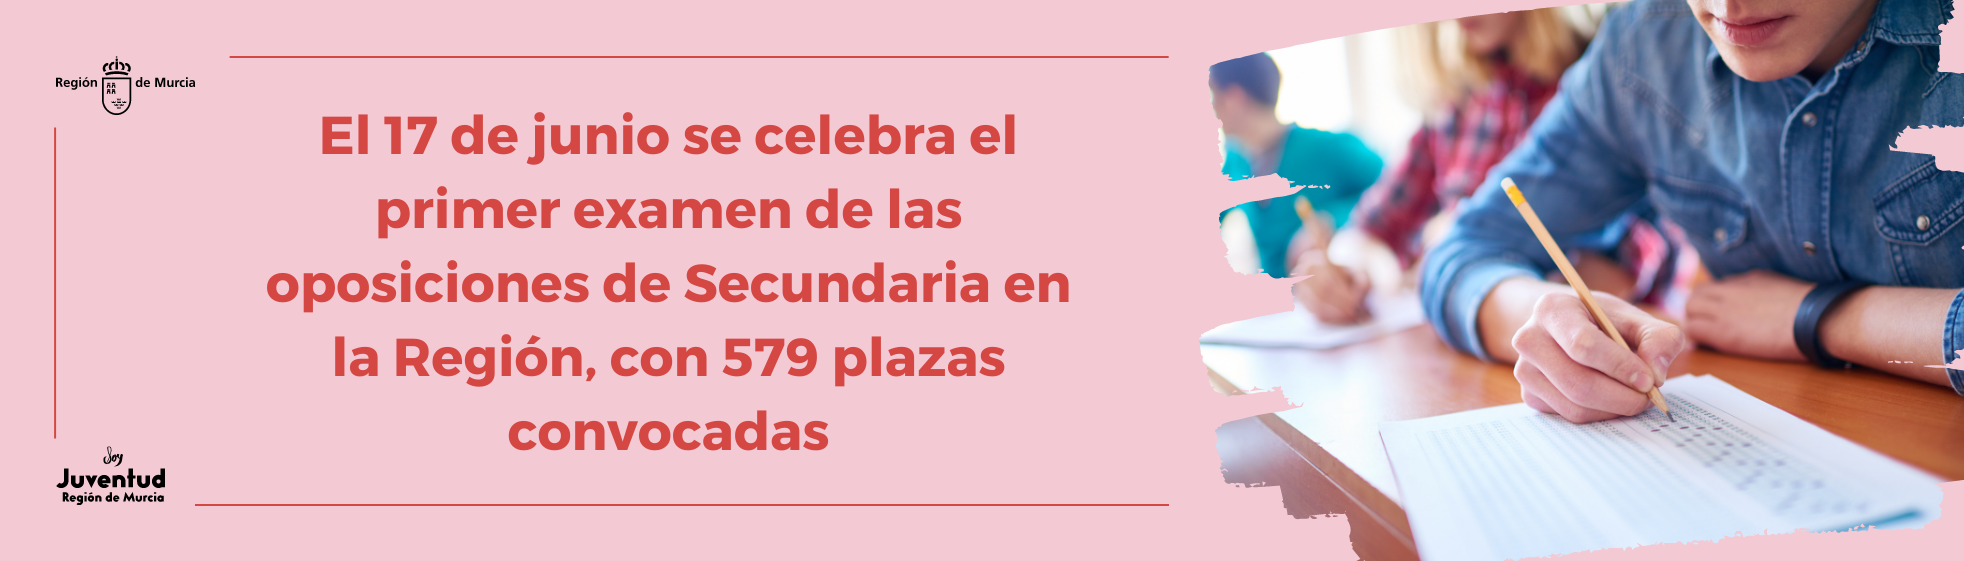 El 17 de junio se celebra el primer examen de las oposiciones de Secundaria en la Región, con 579 plazas convocadas